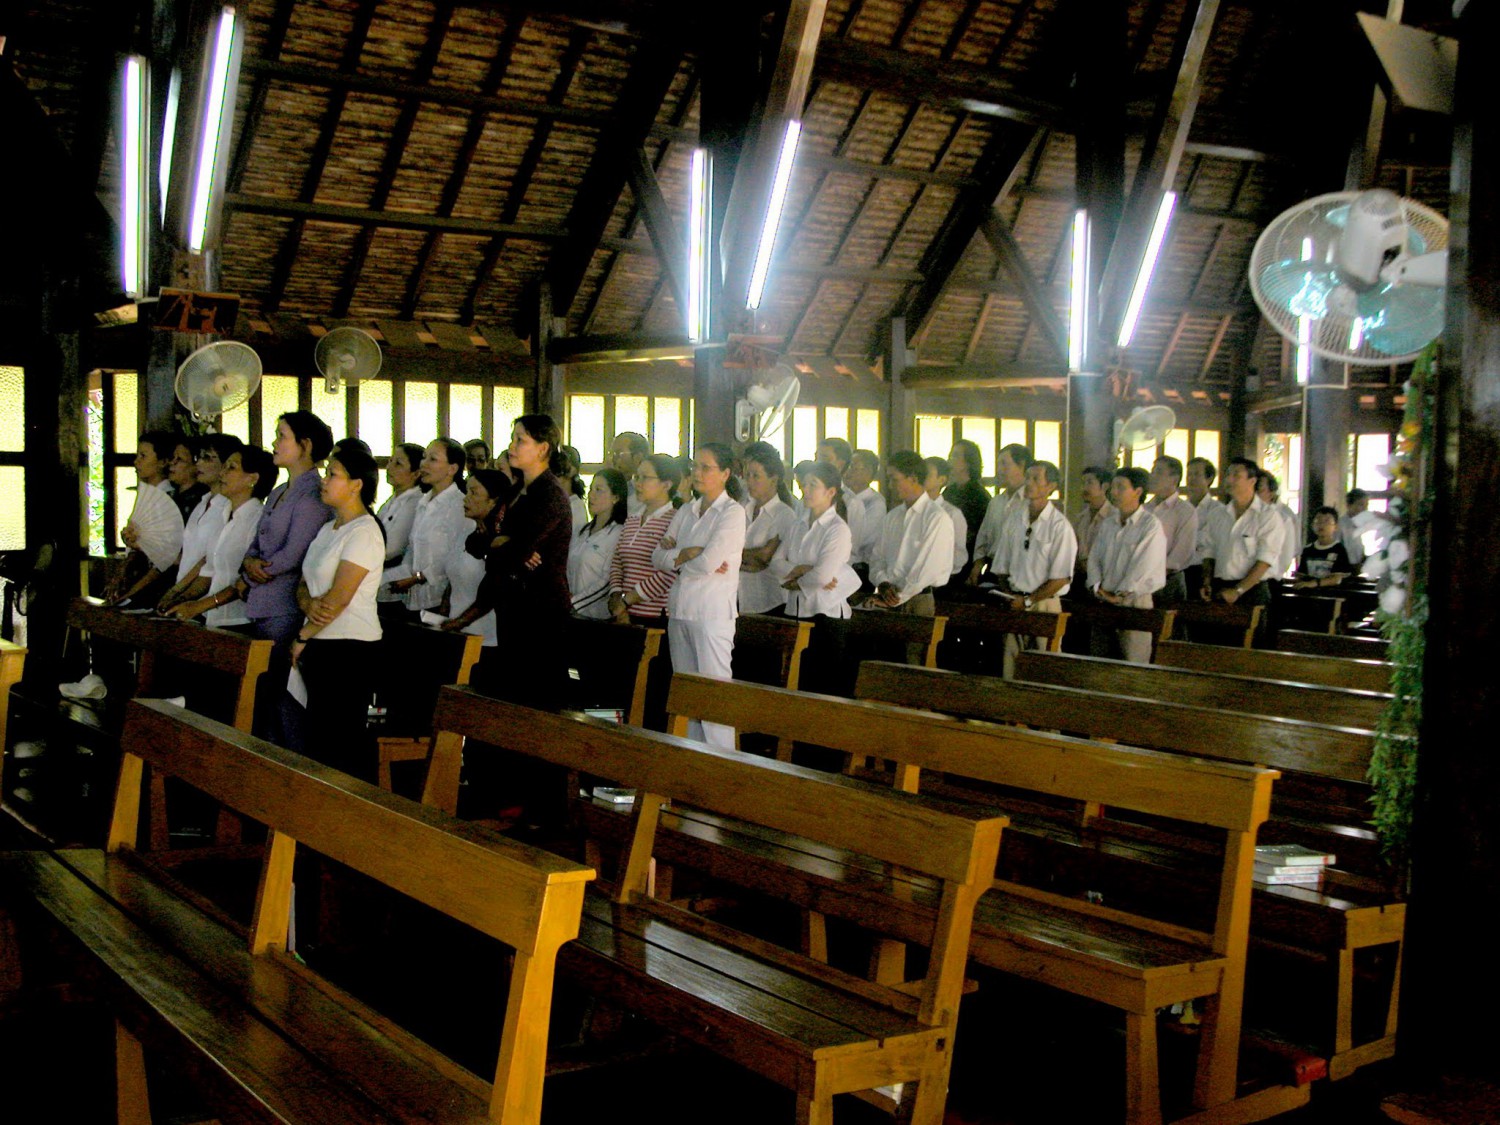 GĐ.LBT Chầu Thánh Thể - 2006